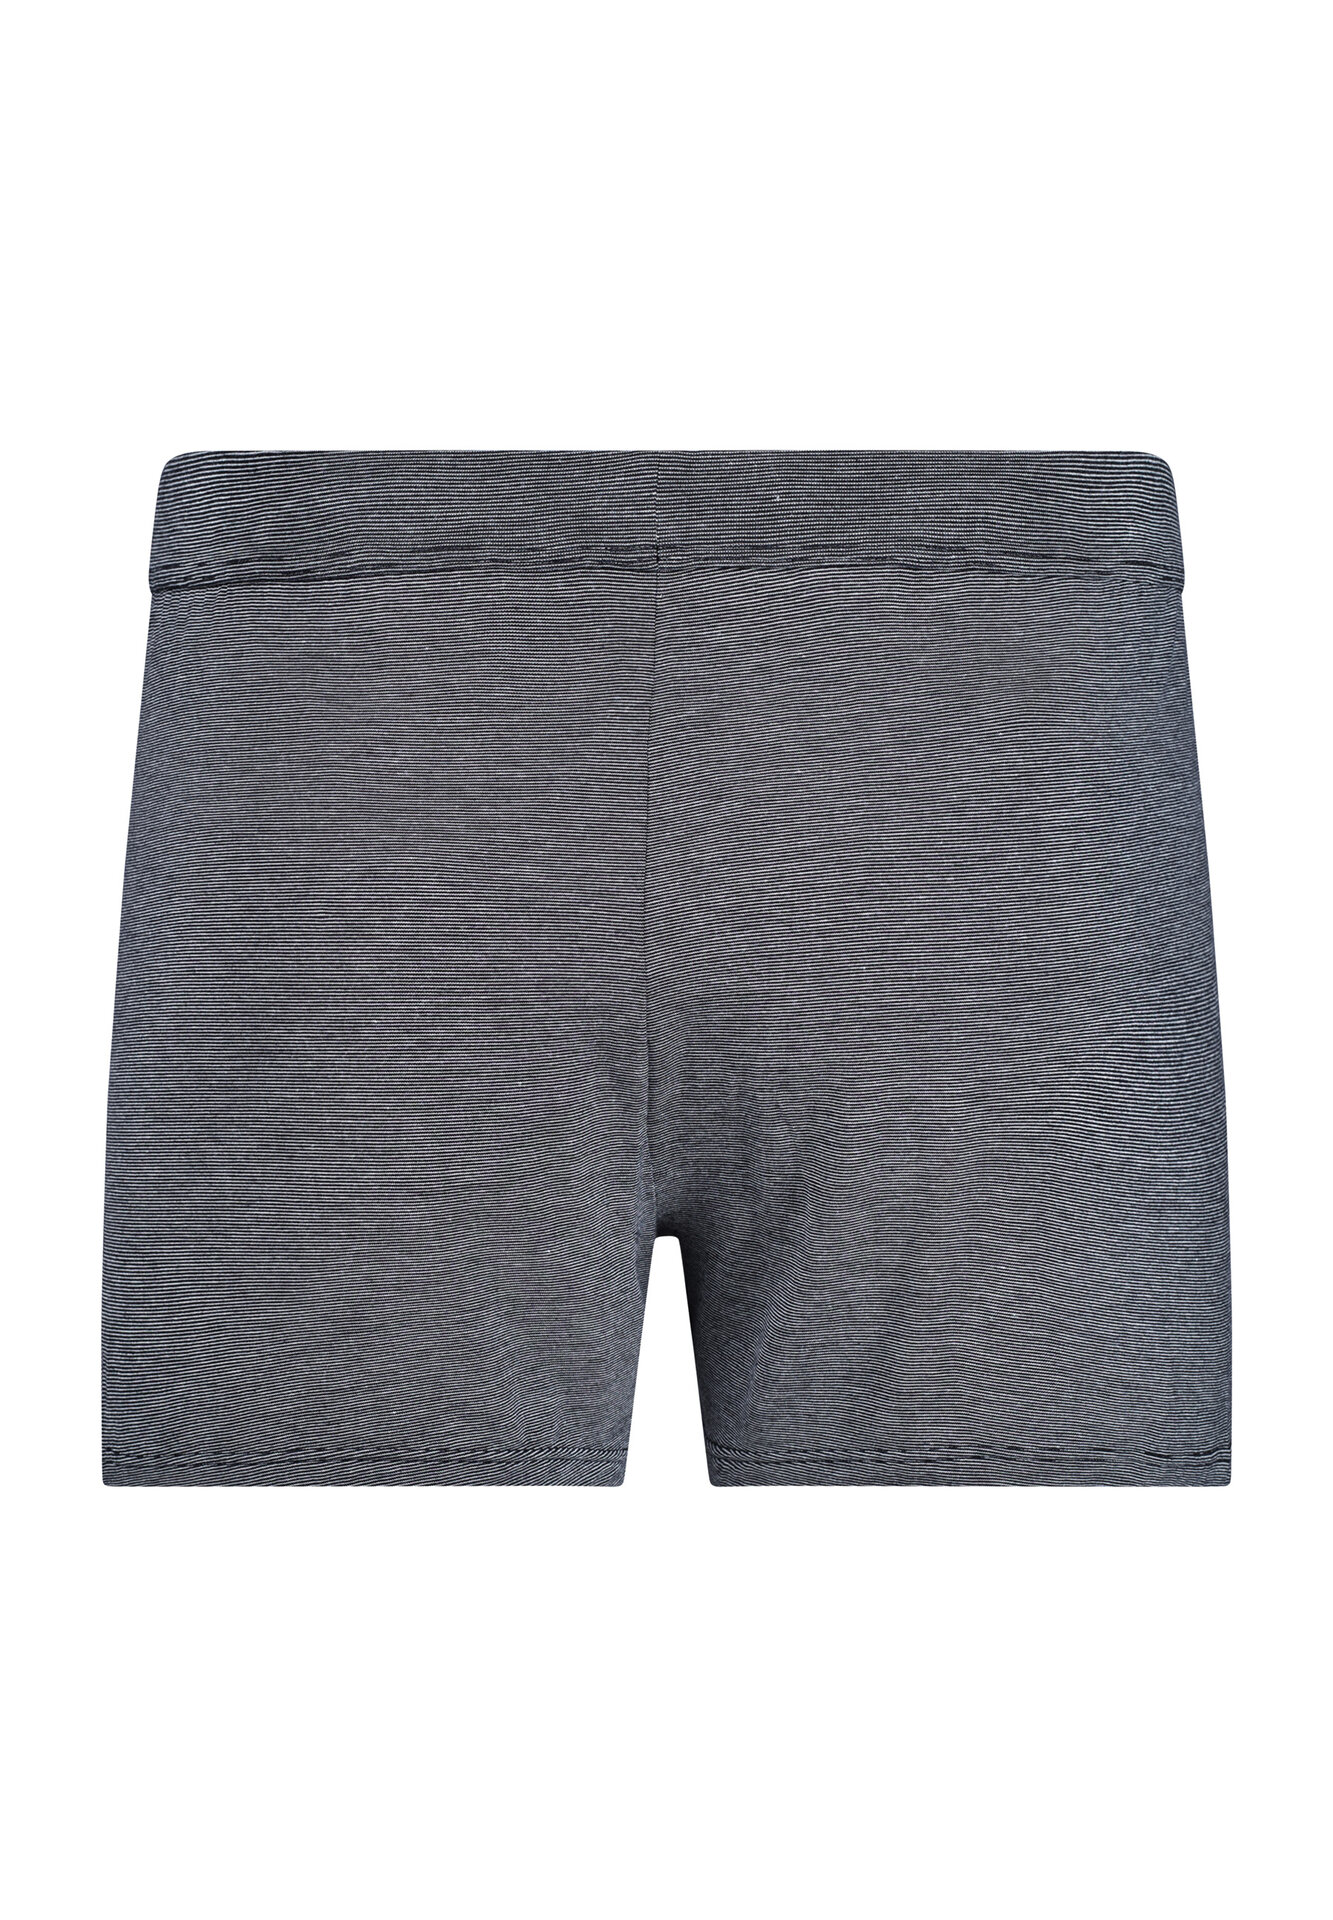 Skiny Daywear Cooling Deluxe Herren Boxer Shorts